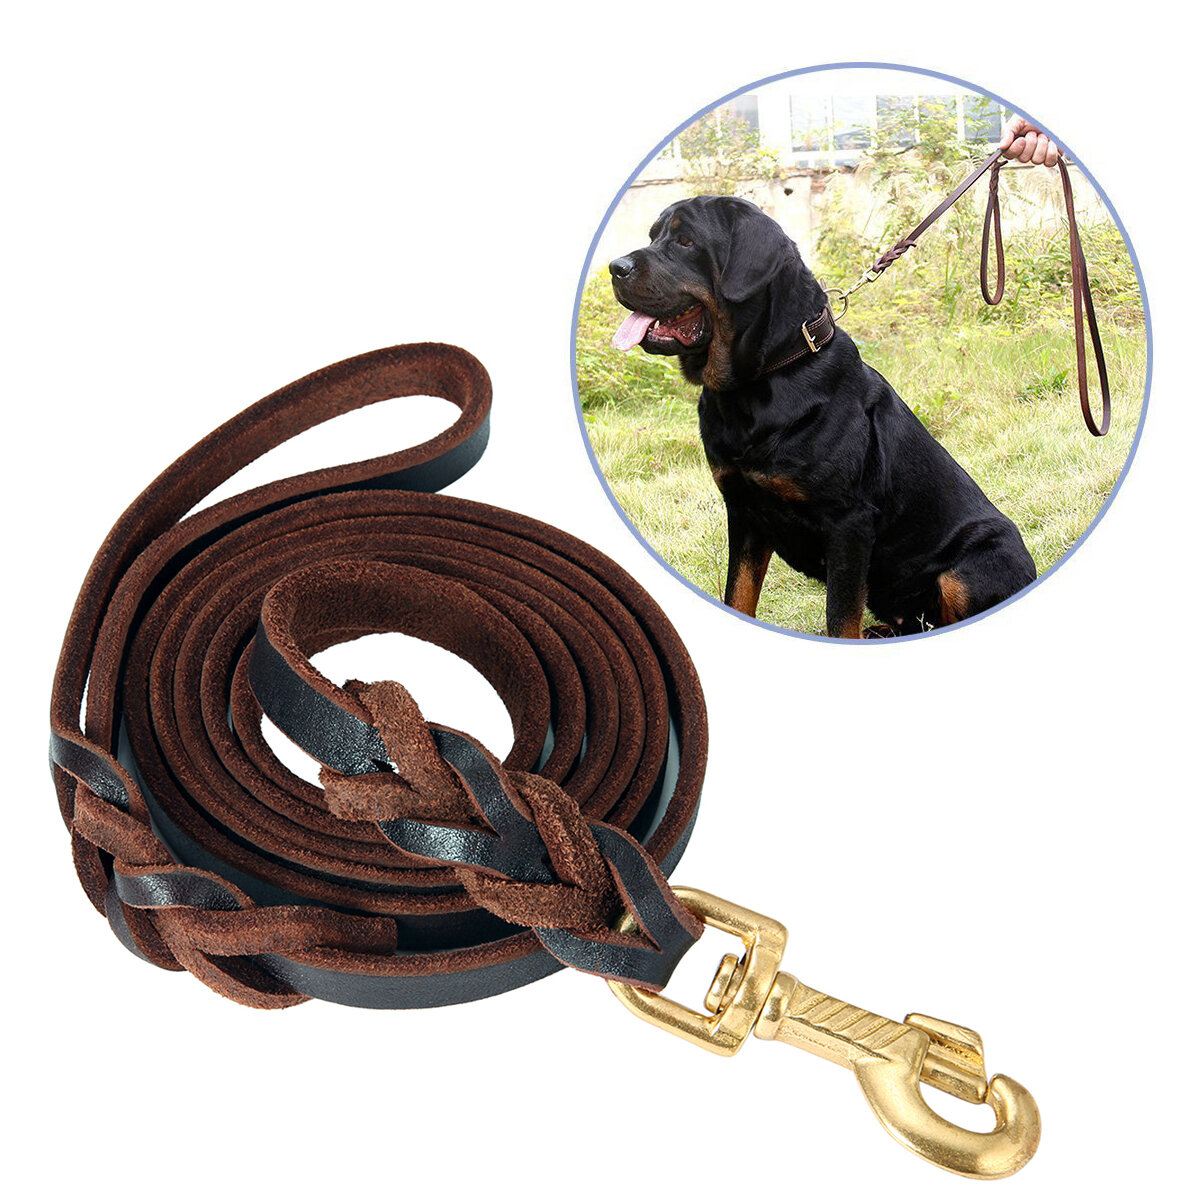 Leather Dog Leash 6 ft Leather Dog Training Leash Pet Braided Dog Leash for Large Medium Leads Rope 